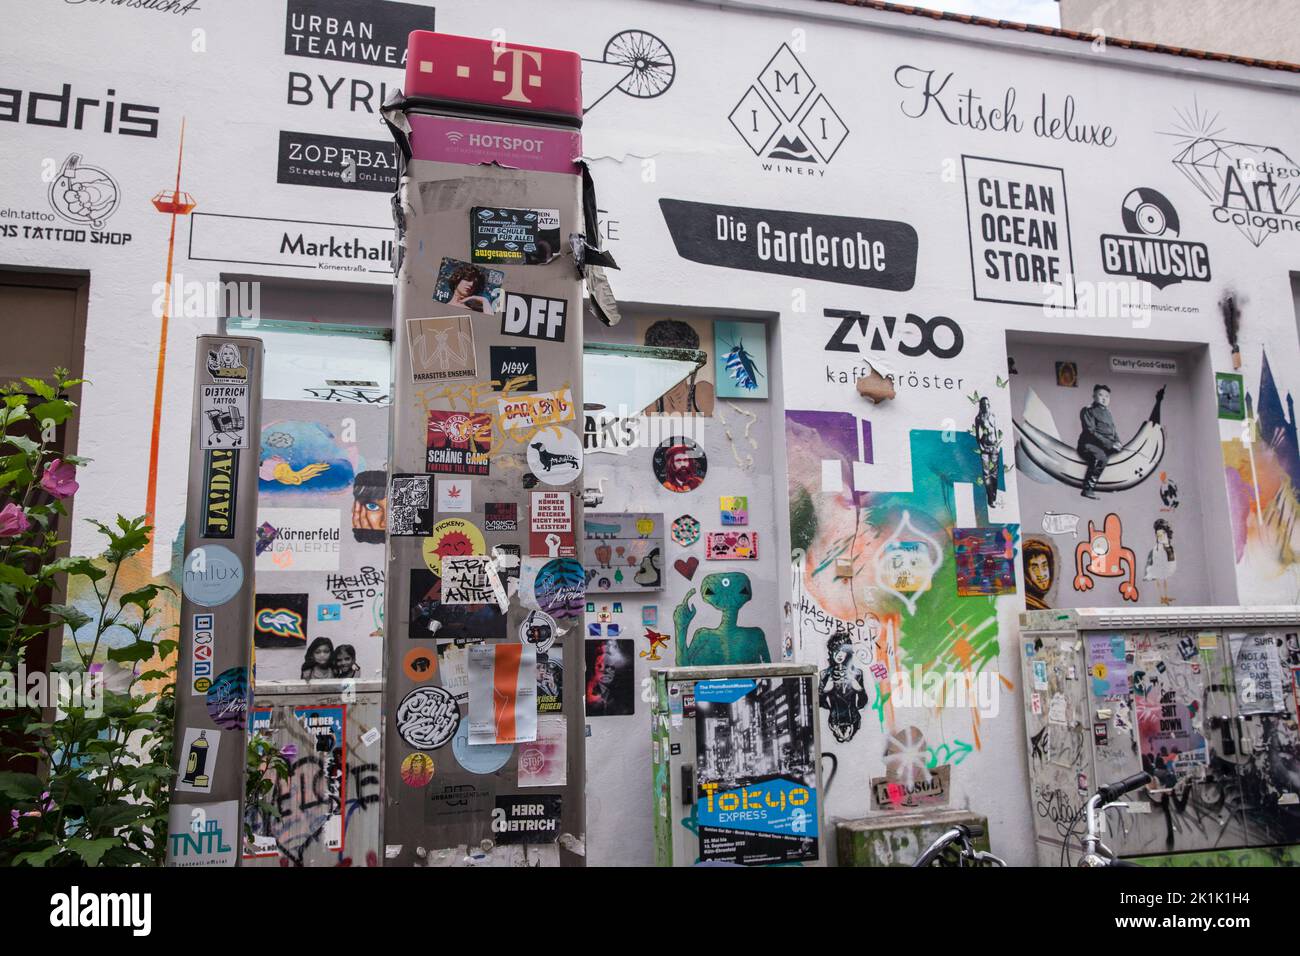 Parete della casa e telefono pubblico con graffiti, paste-up e loghi dei negozi che si trovano qui, via Koerner nel quartiere di Ehrenfeld, Colonia, Hausw tedesco Foto Stock